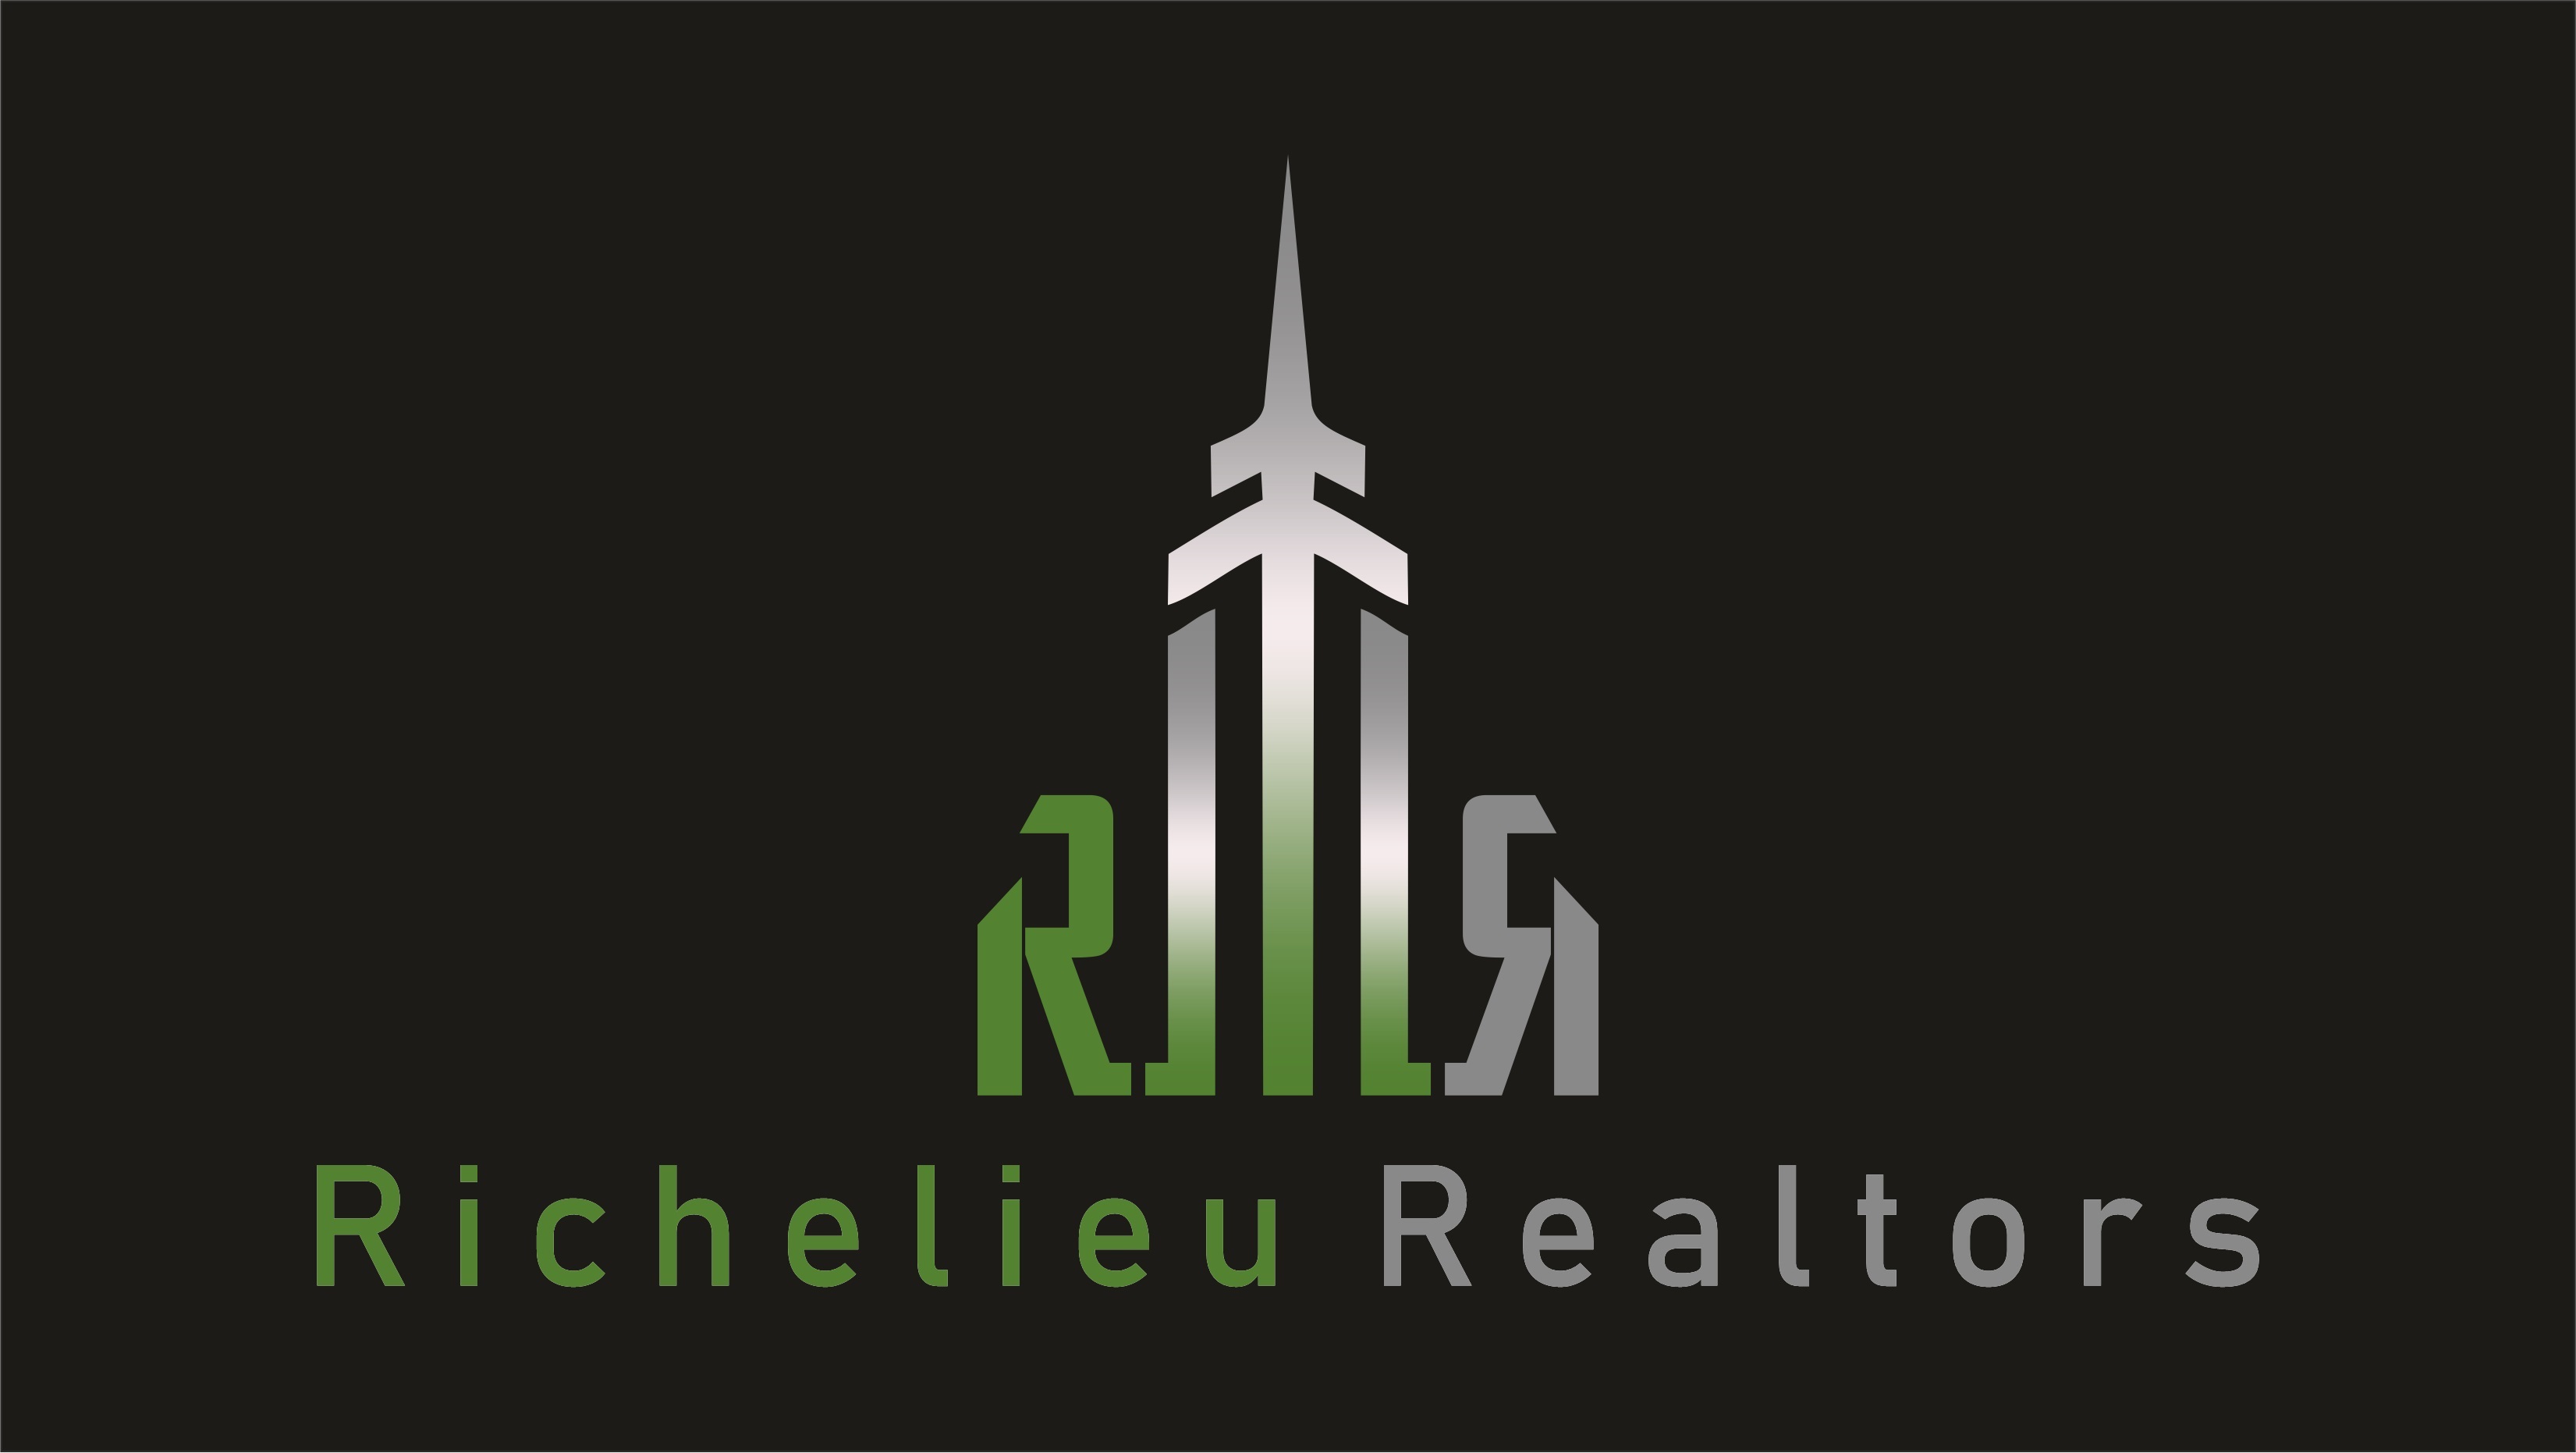 Richelieu Realtors